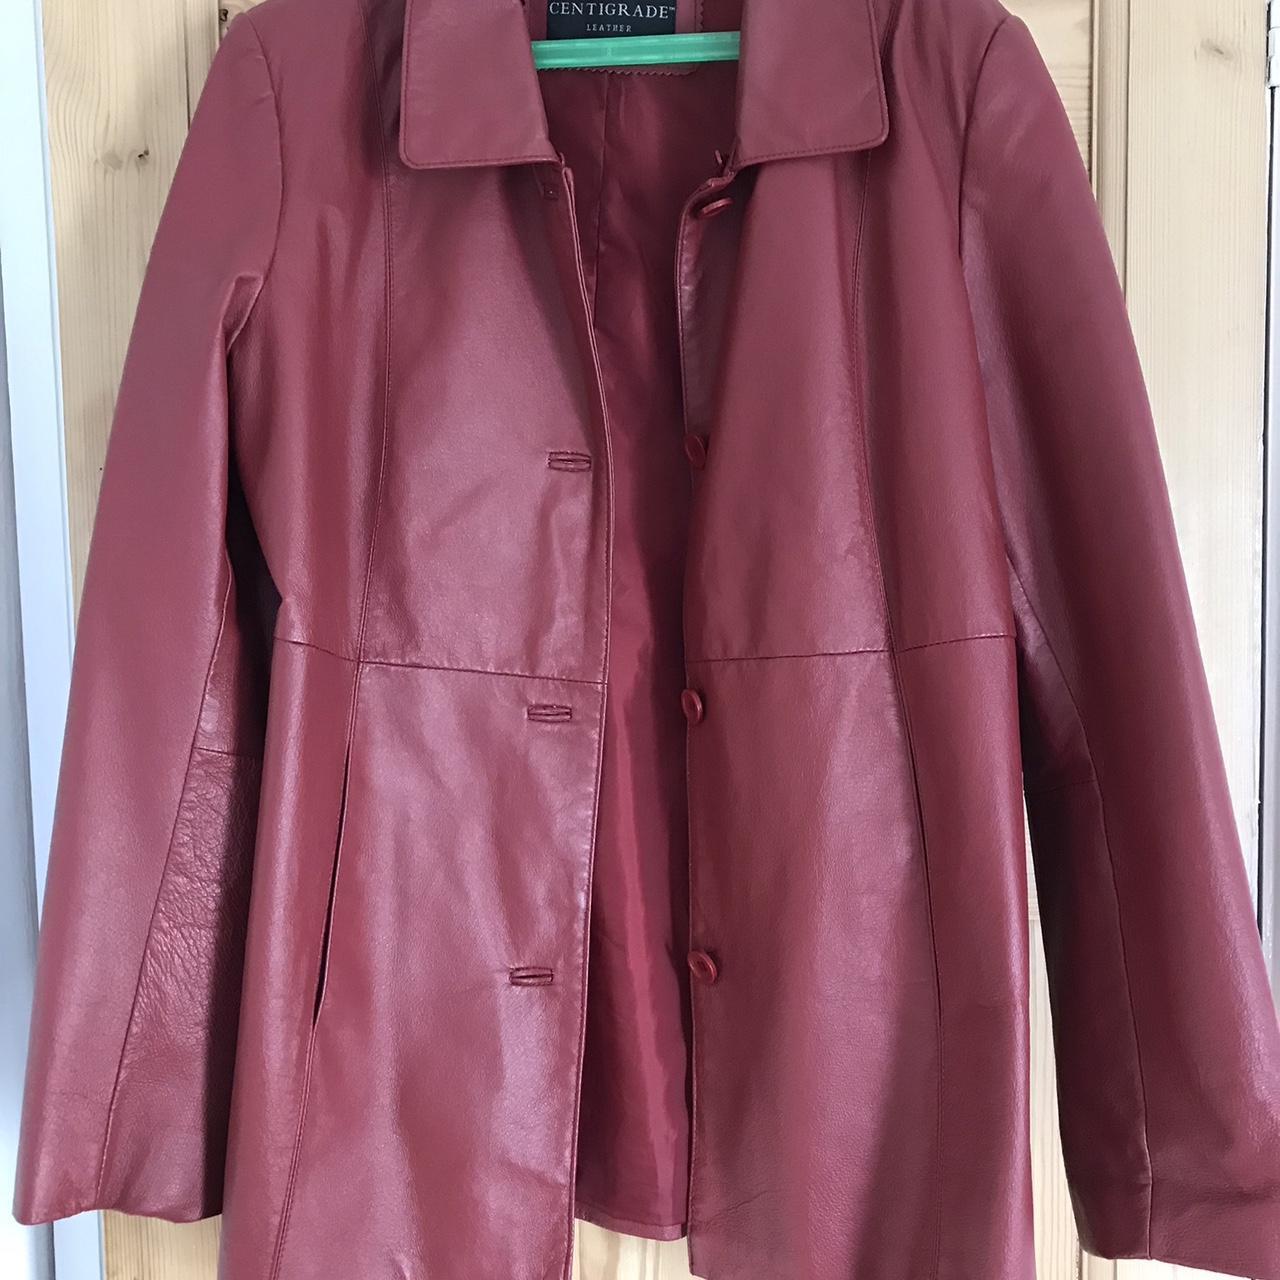 Vintage burgundy leather jacket Fits 12-14 Happy... - Depop